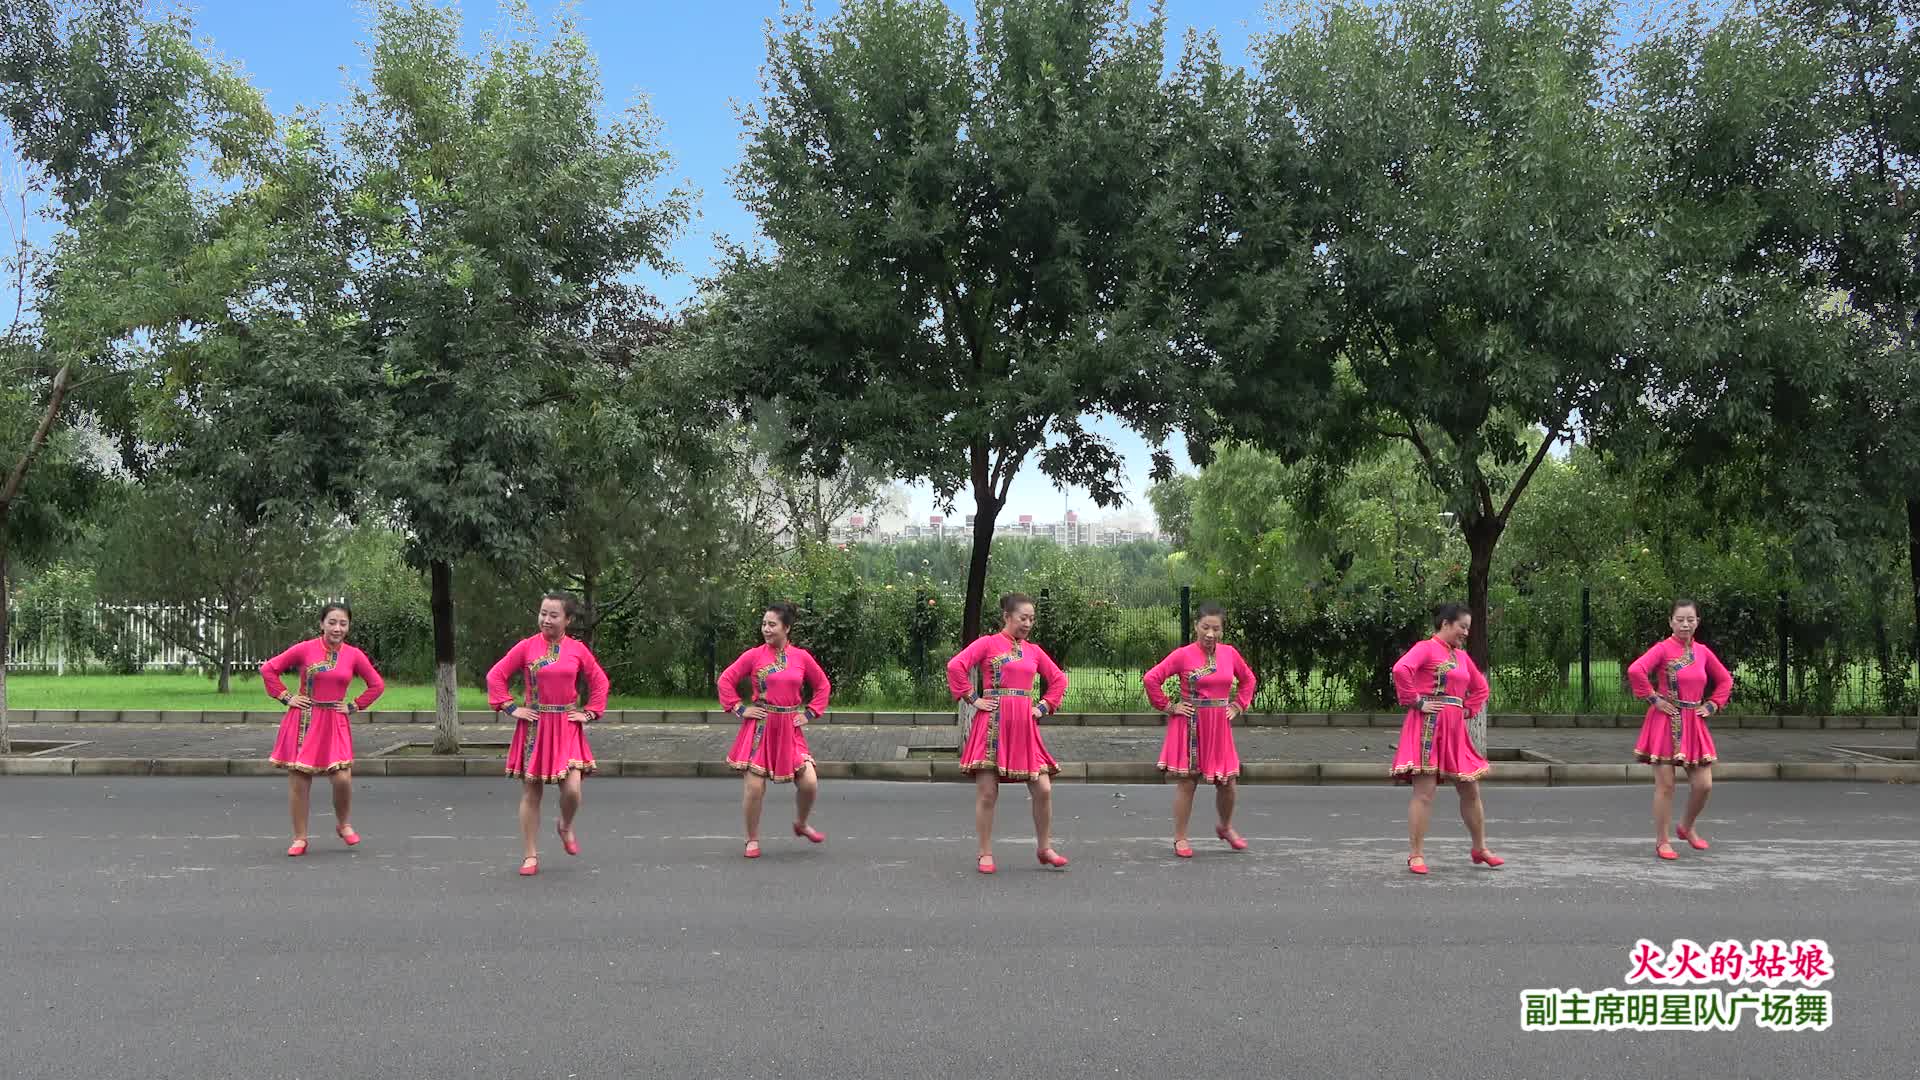 【民族盛典】北京加州飞龙广场舞《火火的姑娘》-团队演示